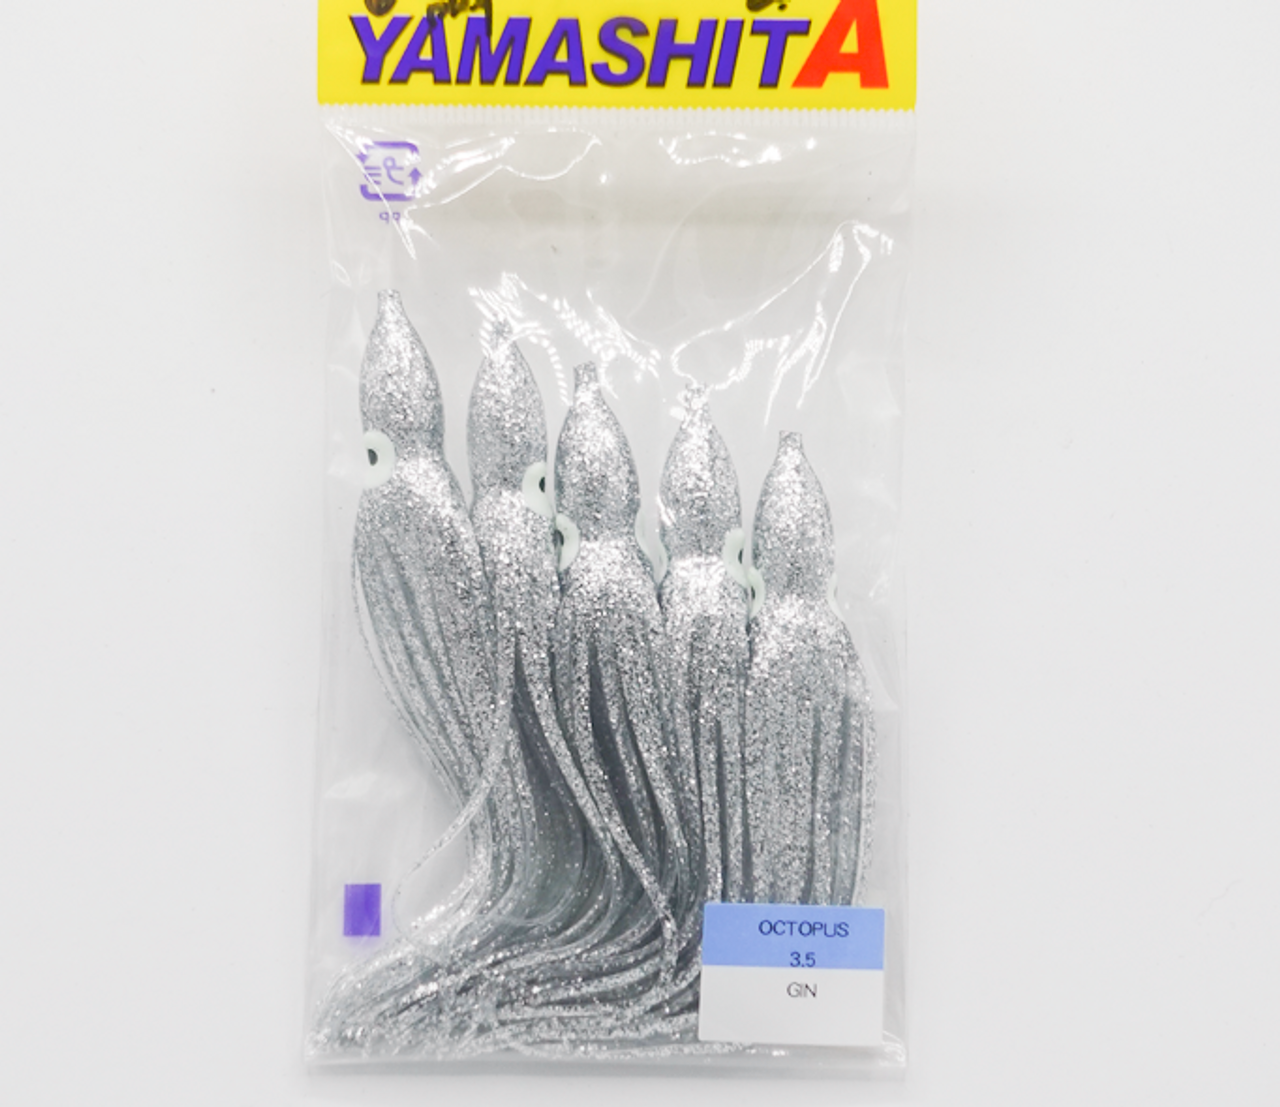 YAMASHITA #35 OCTO - SERIES